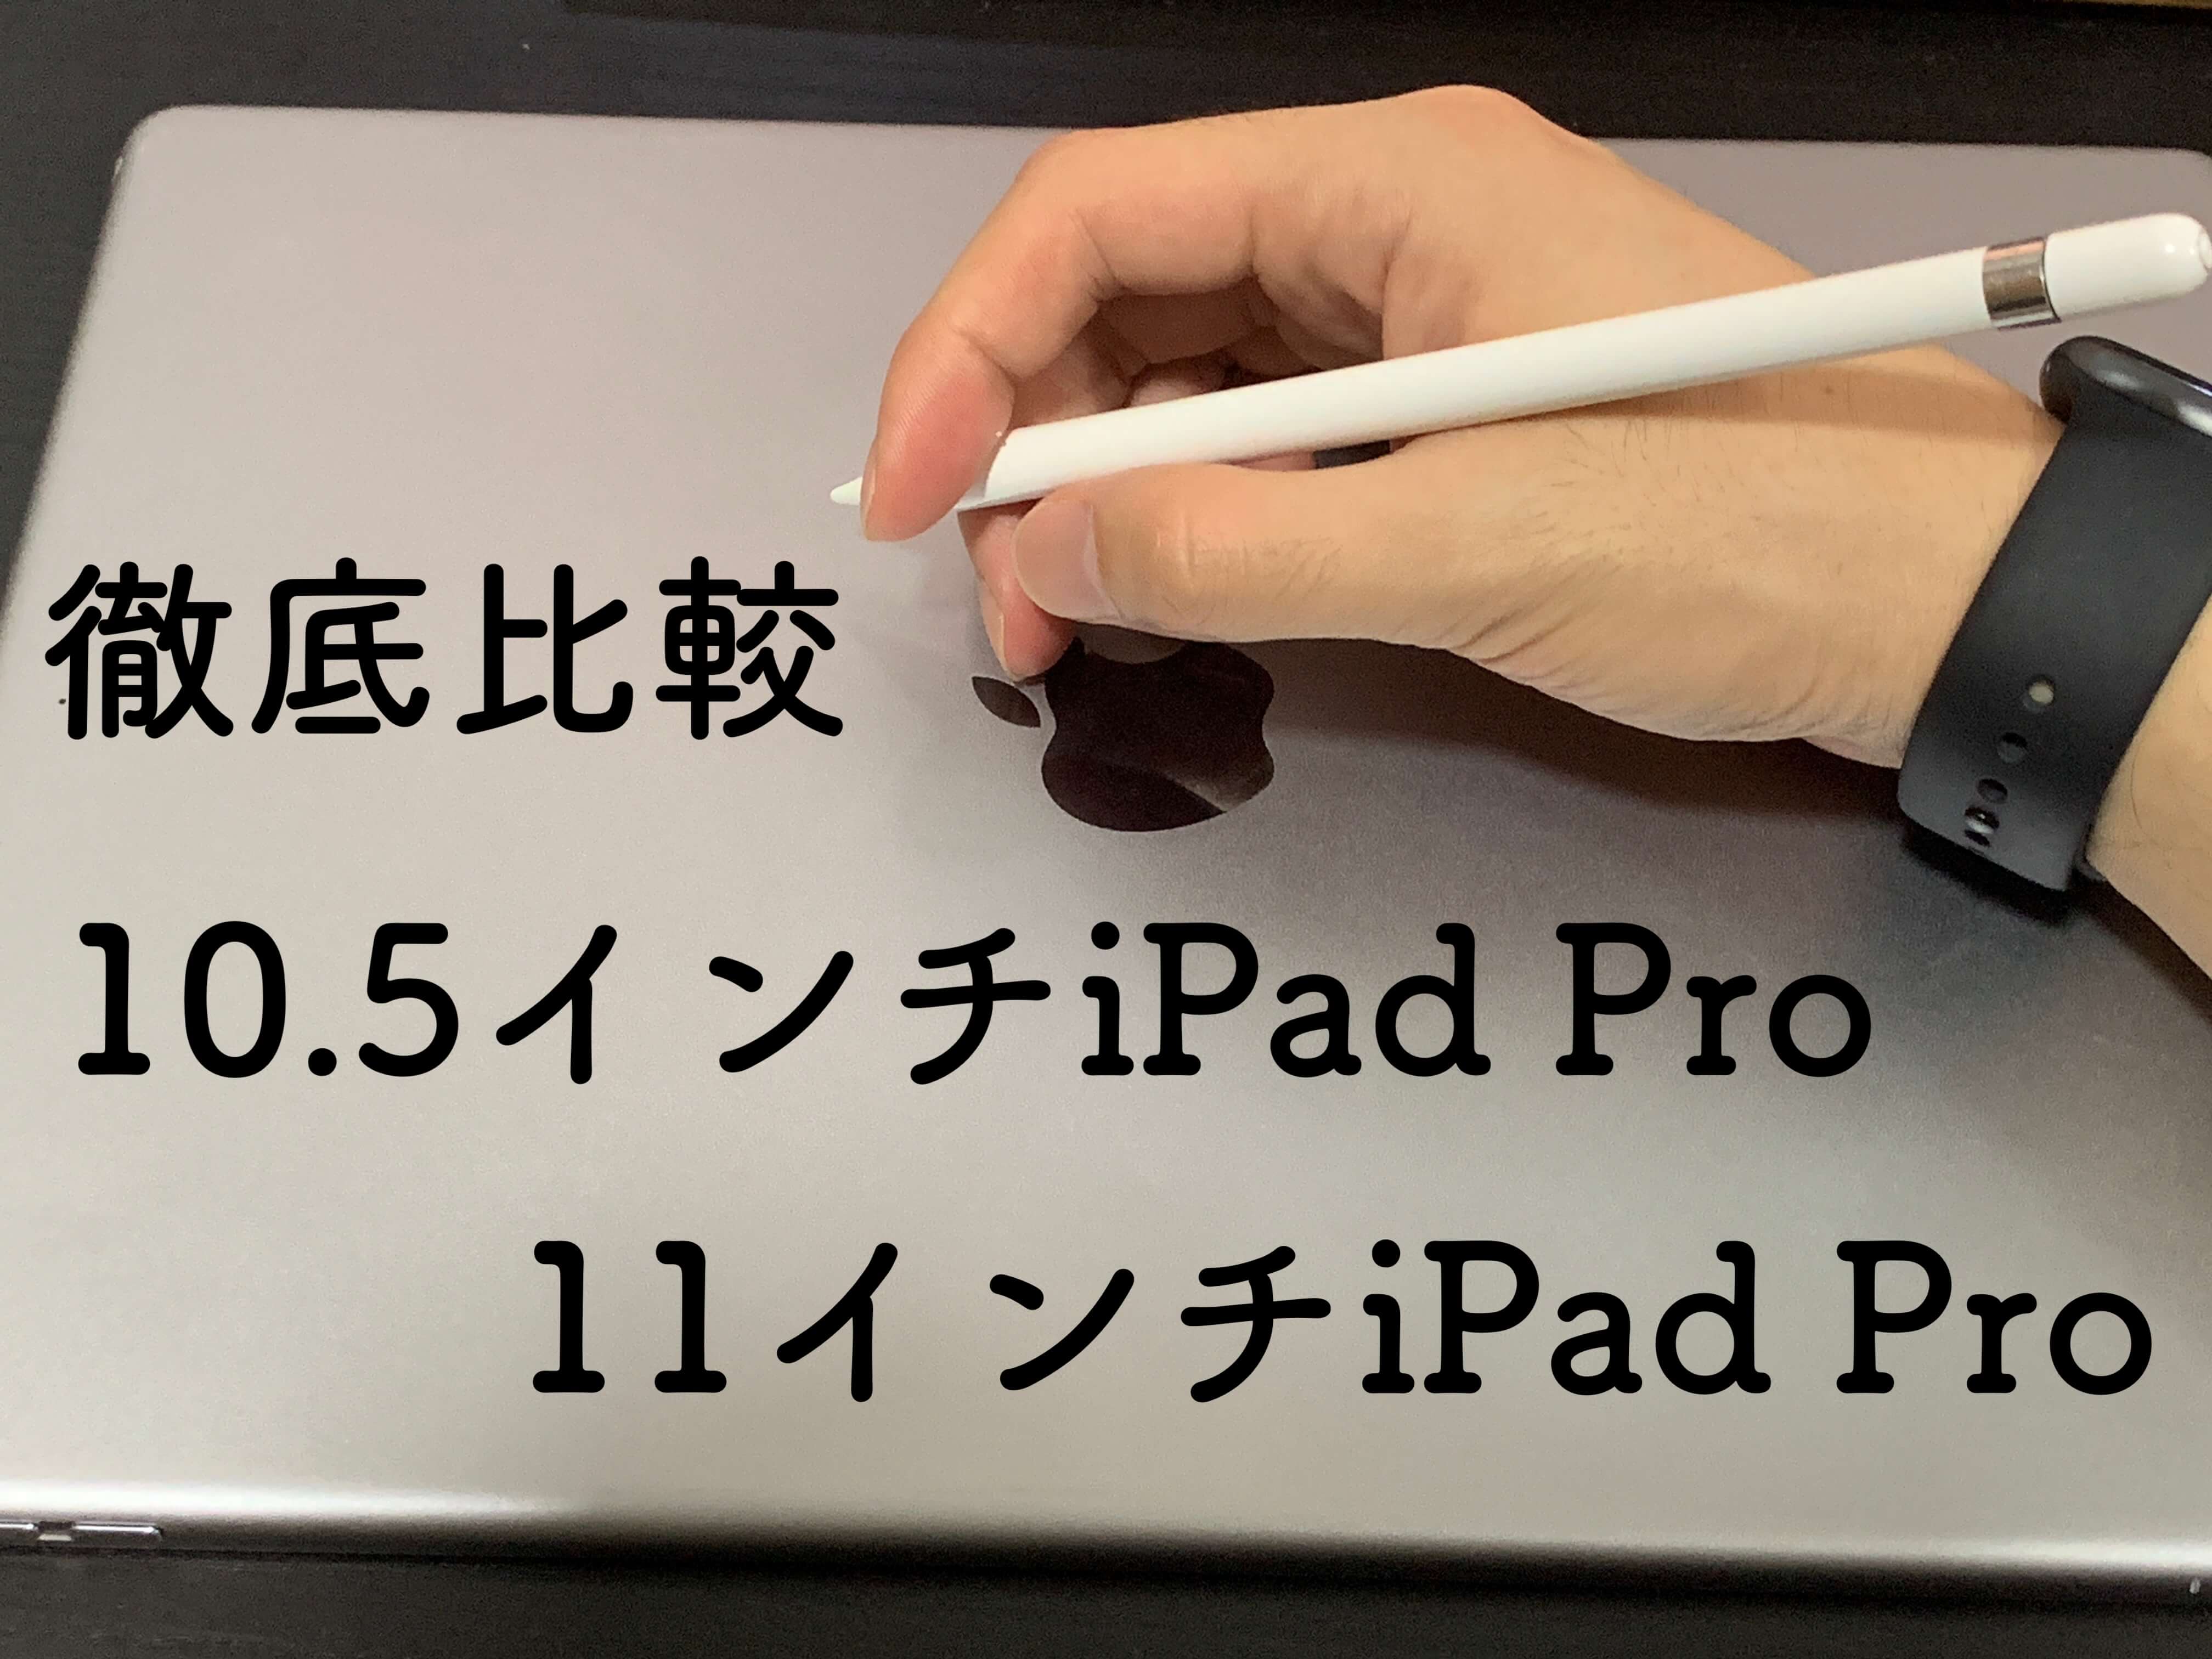 【8,000円値下げ】10.5インチiPad Proと11インチiPad Proを比較してみた